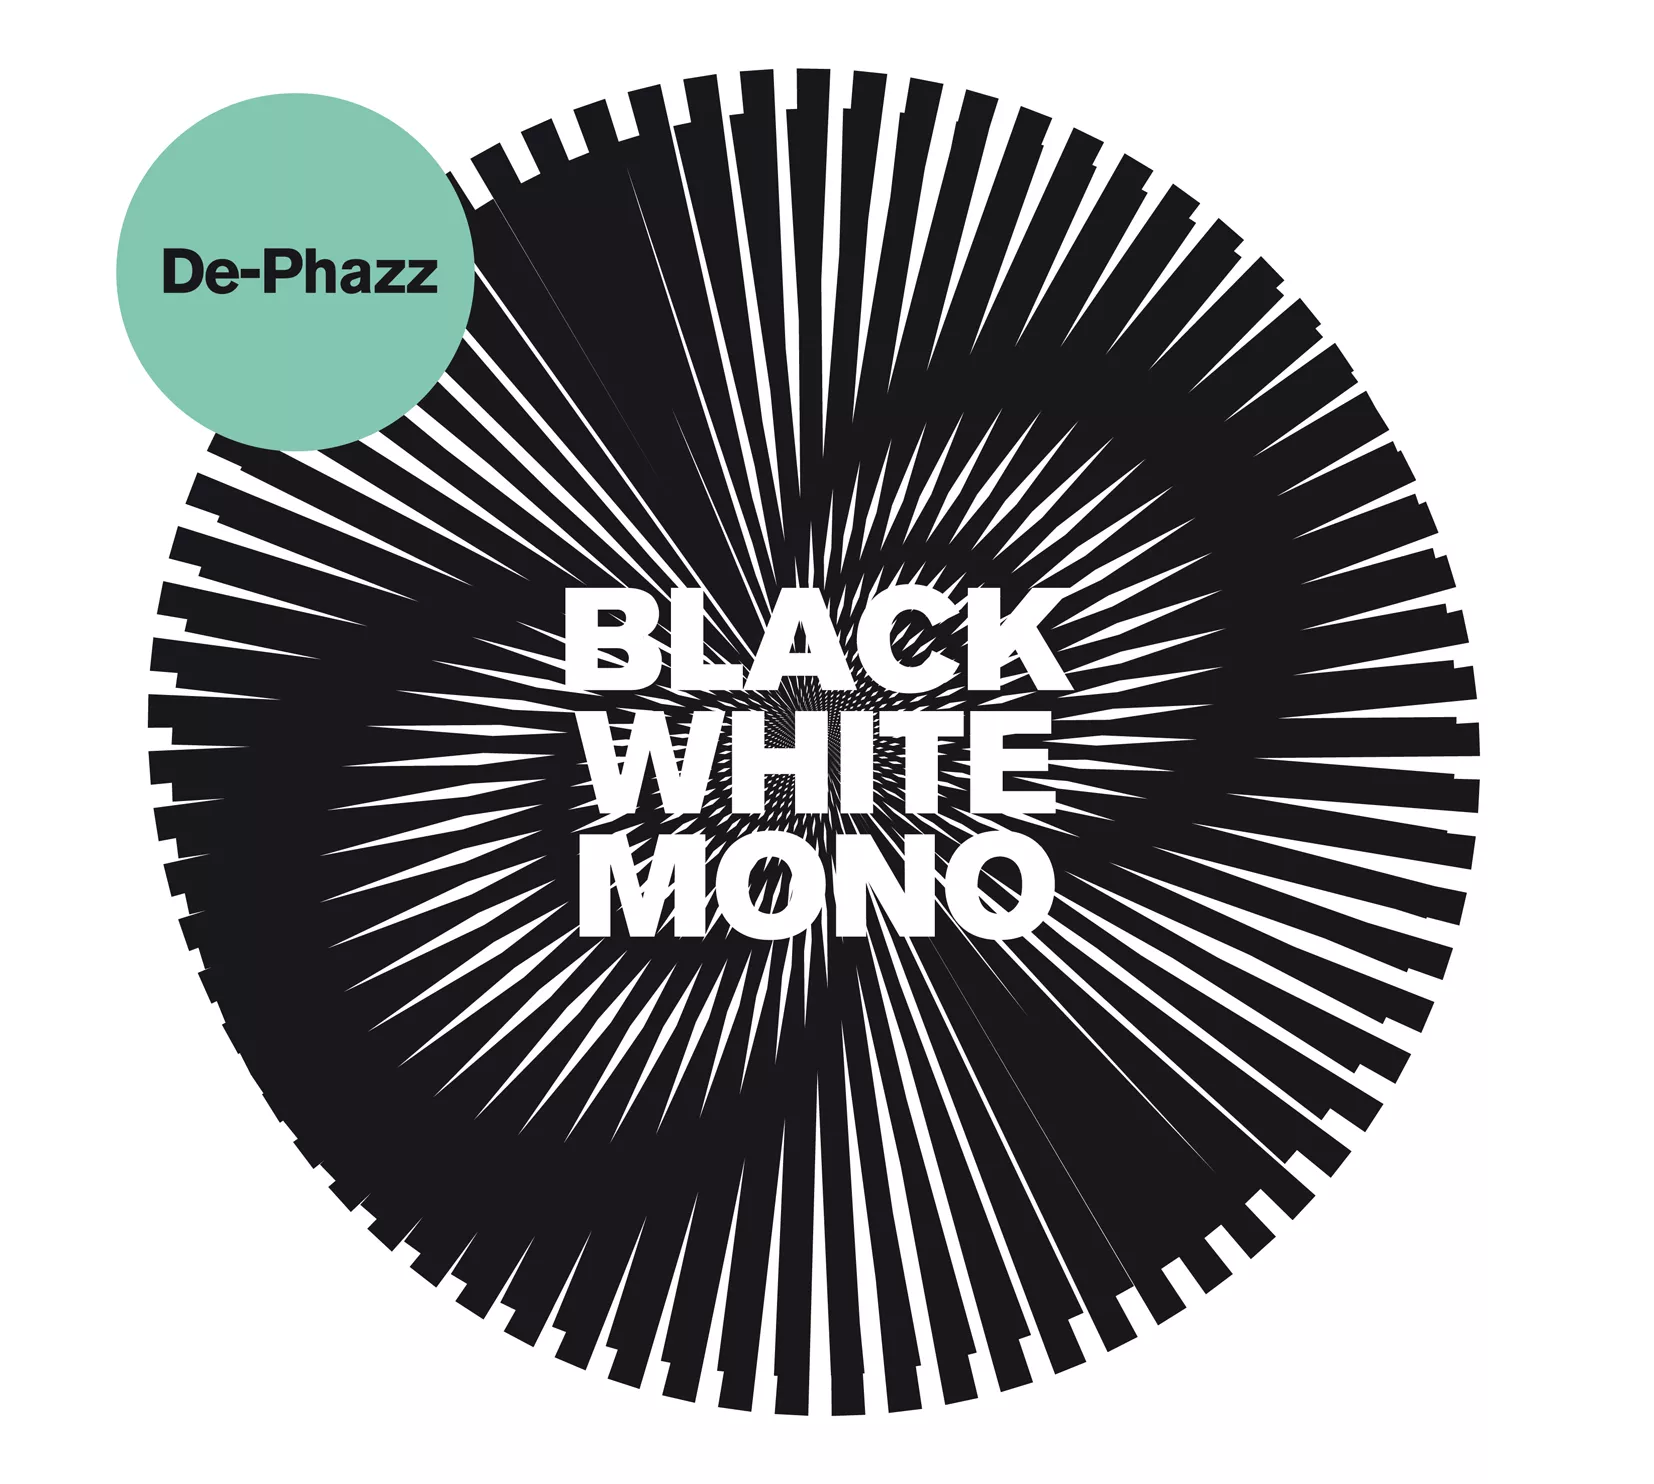 Black White Mono - De-Phazz